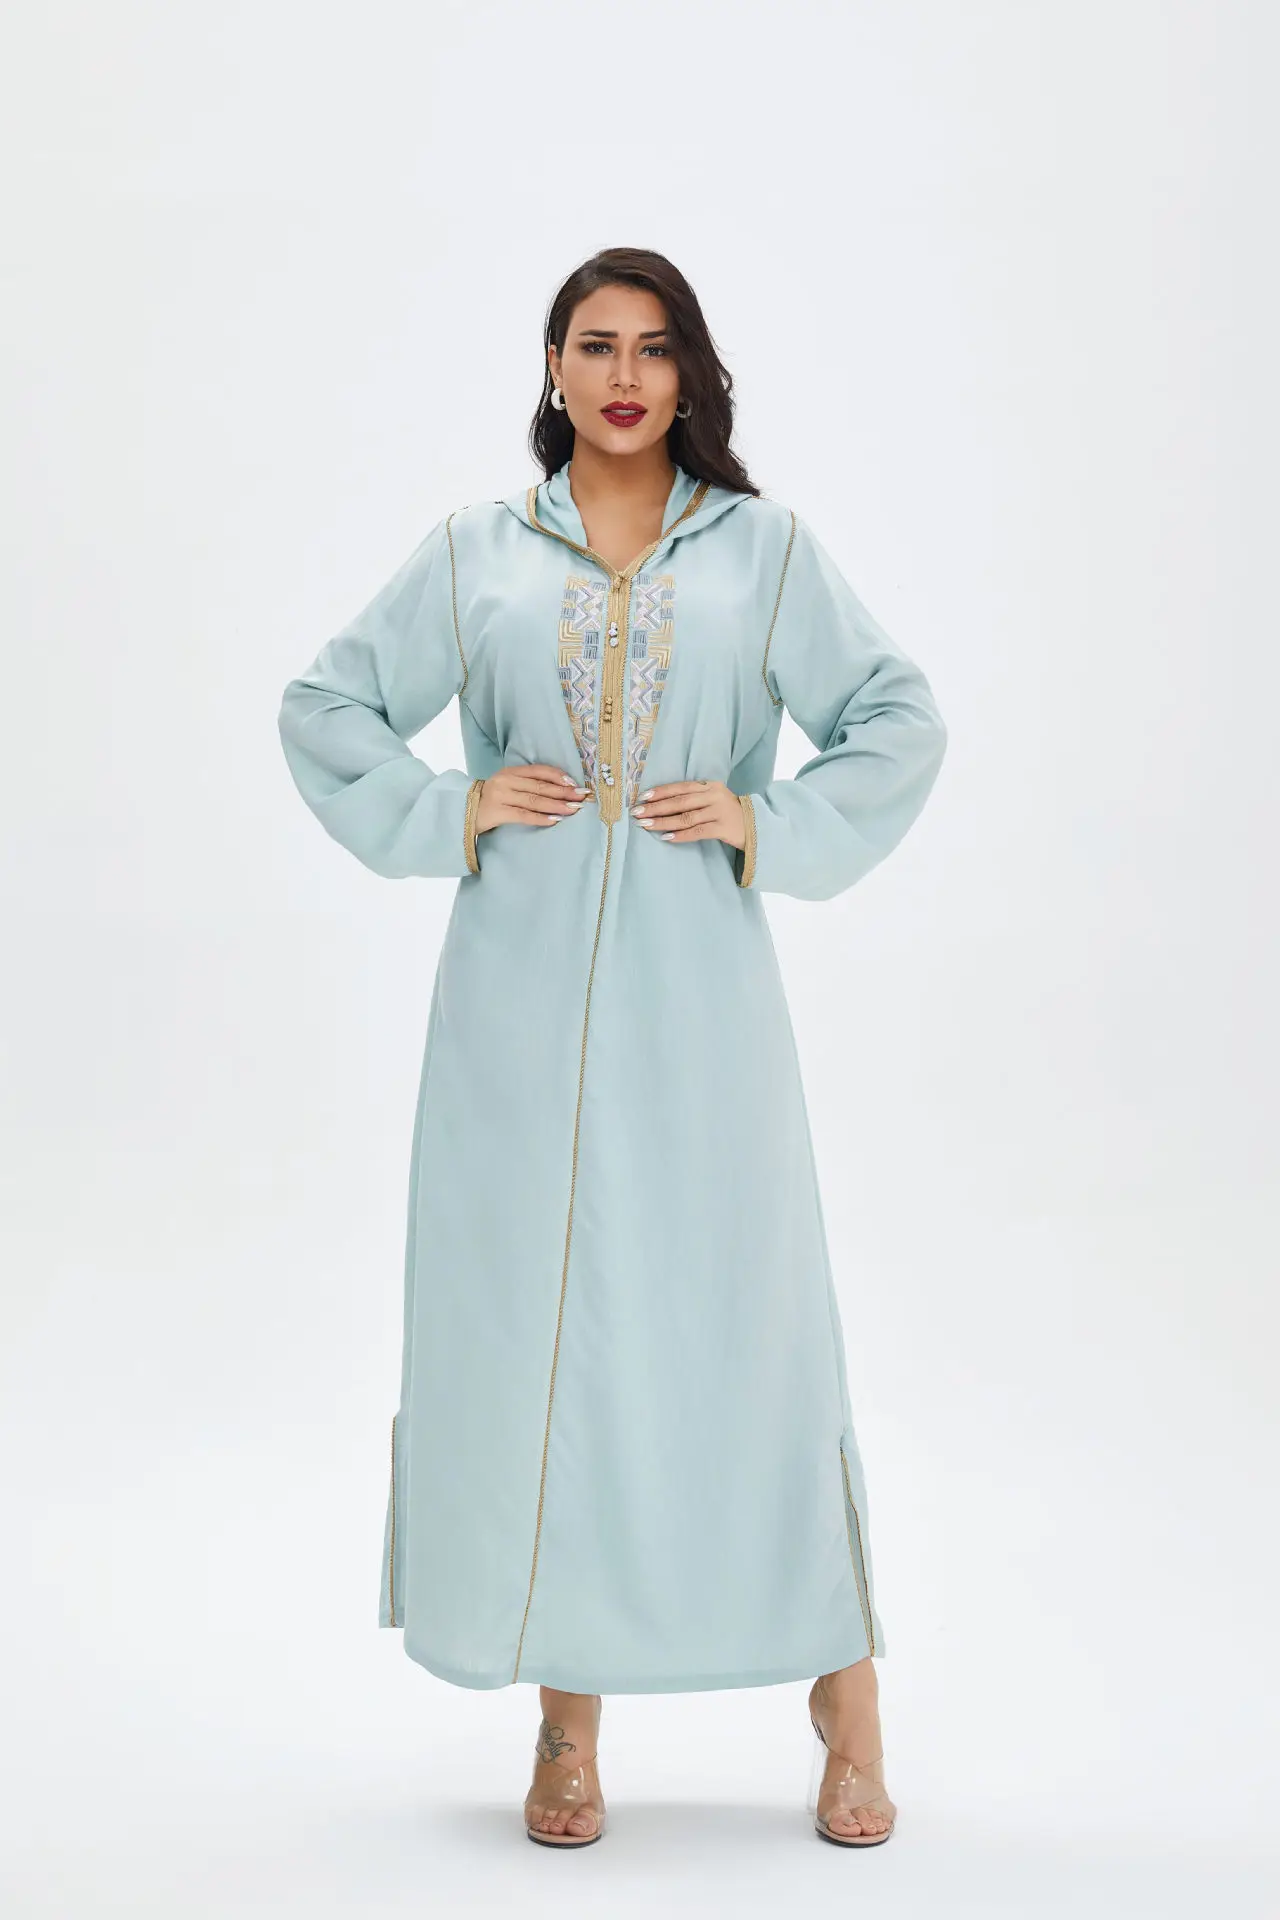 

Мусульманское платье с капюшоном для женщин Рамадан ИД Дубай элегантная Этническая вышивка длинный рукав в арабском стиле индейка одежда